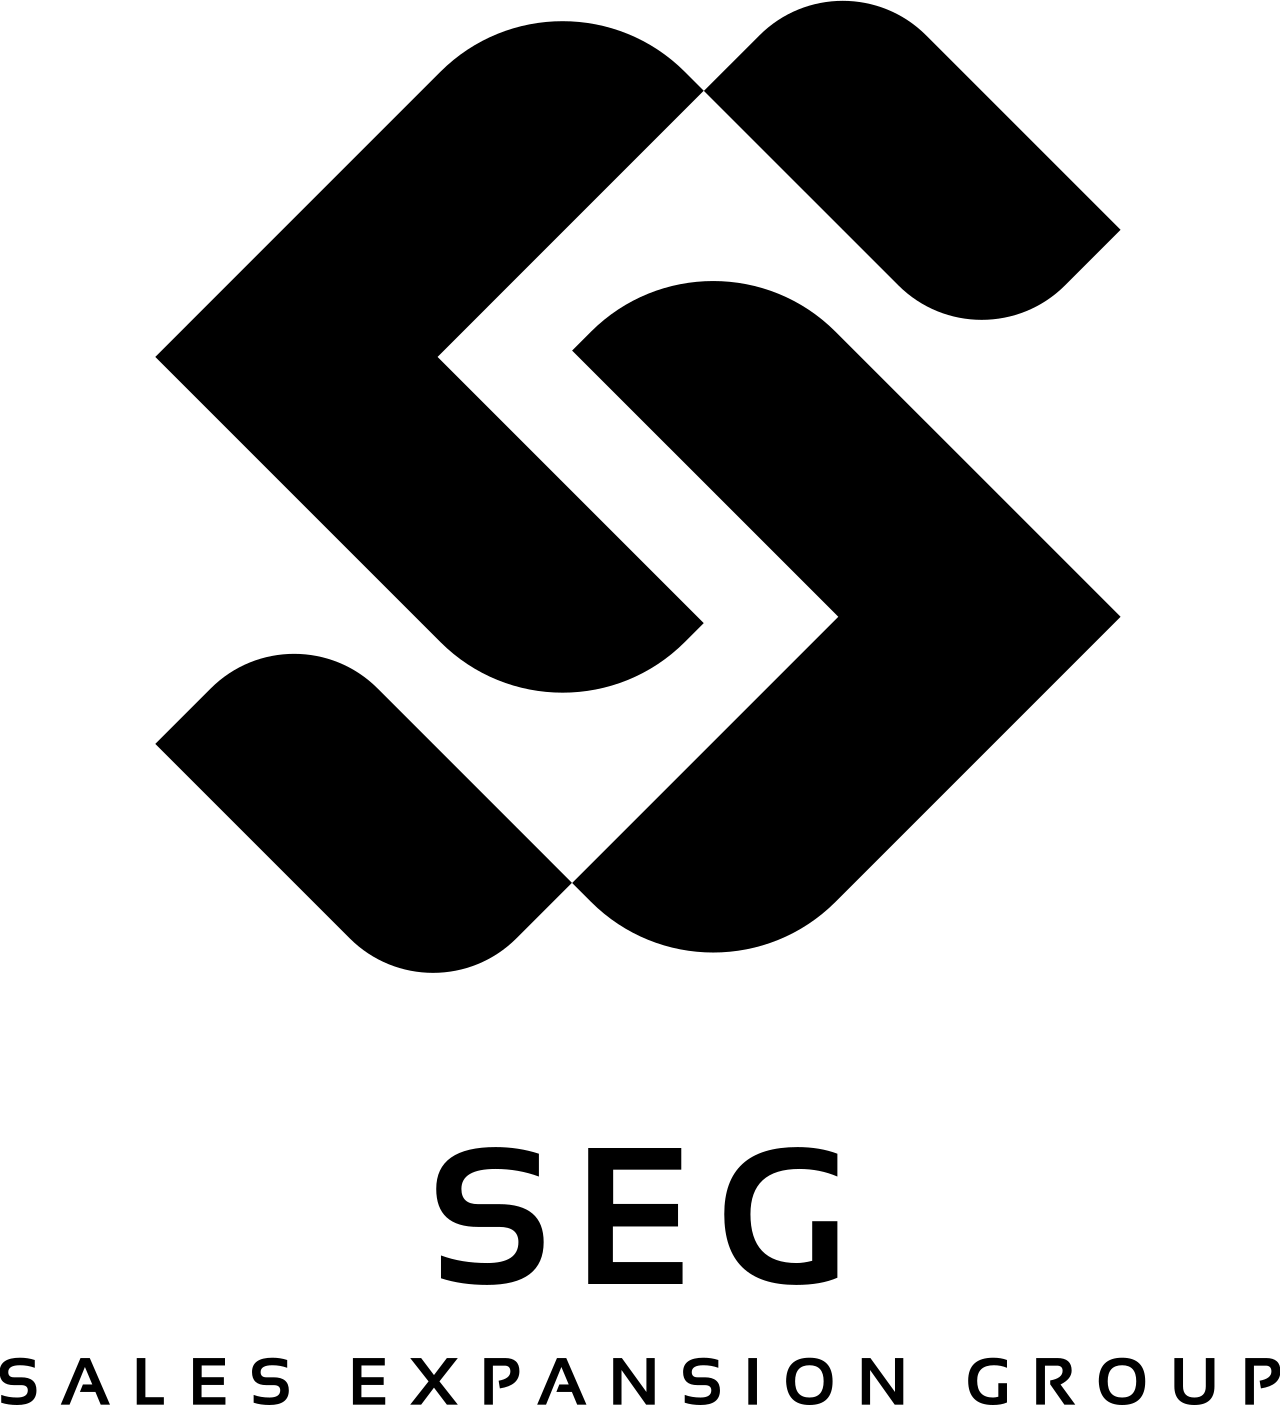 SEG's logo